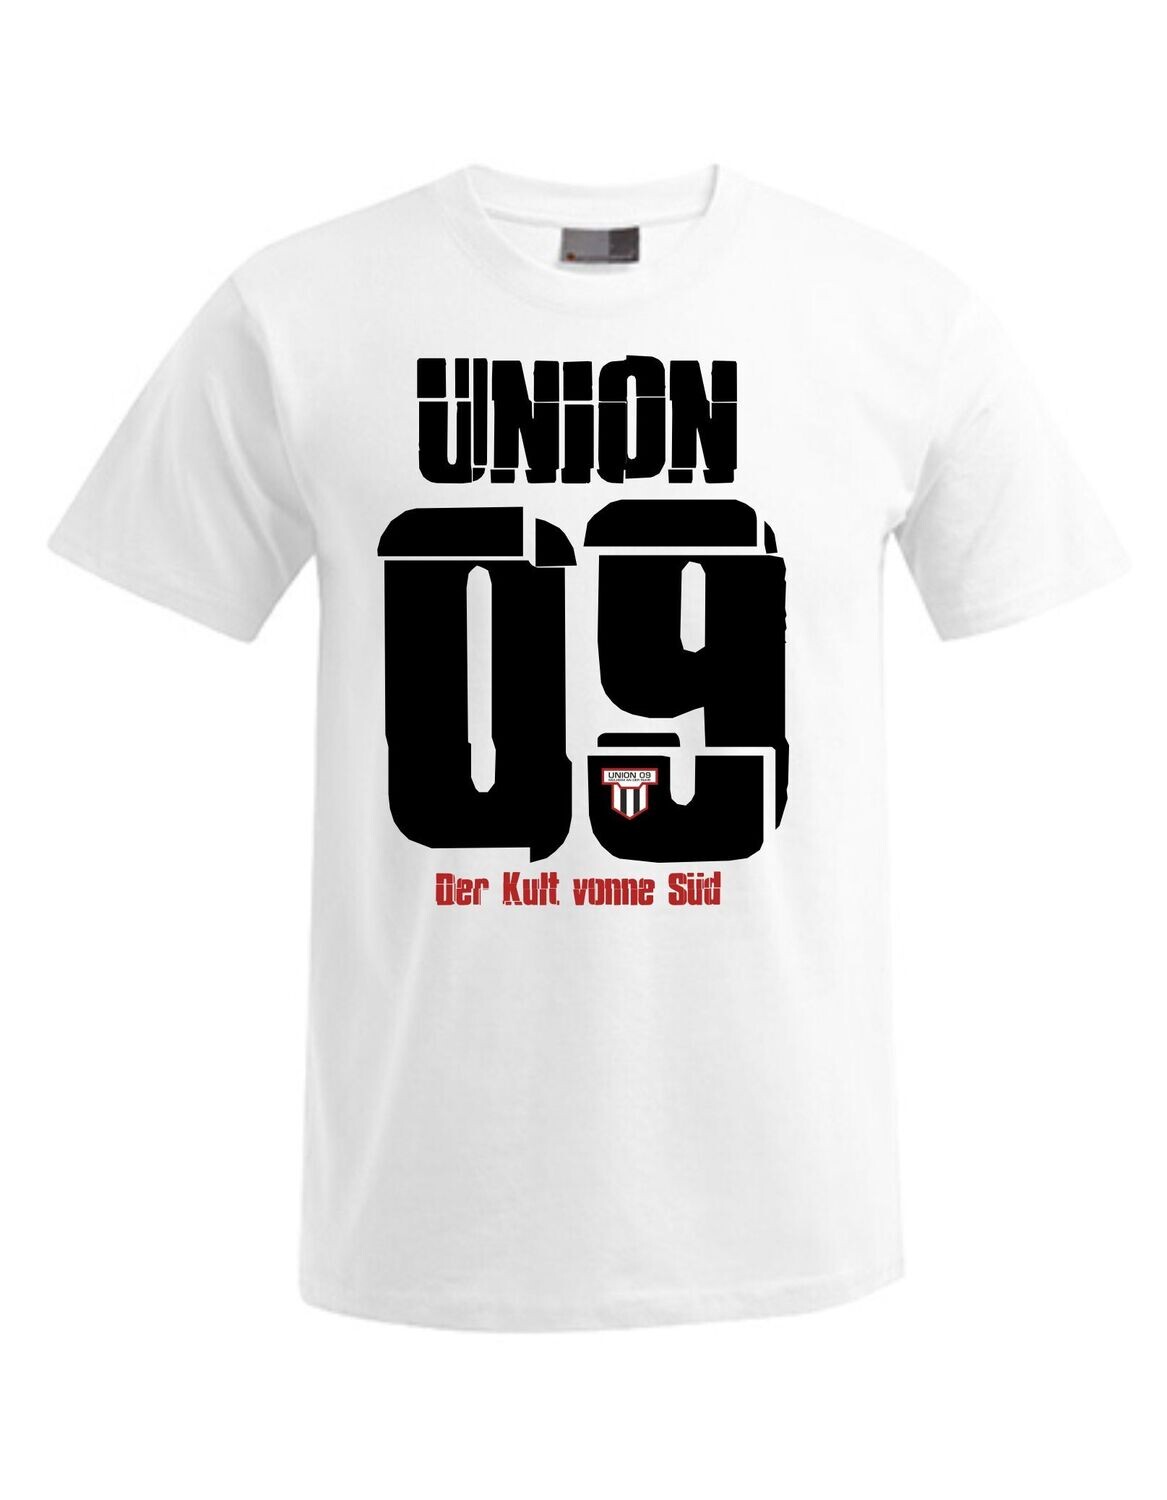 Herren T-Shirt union 09 Nummer groß